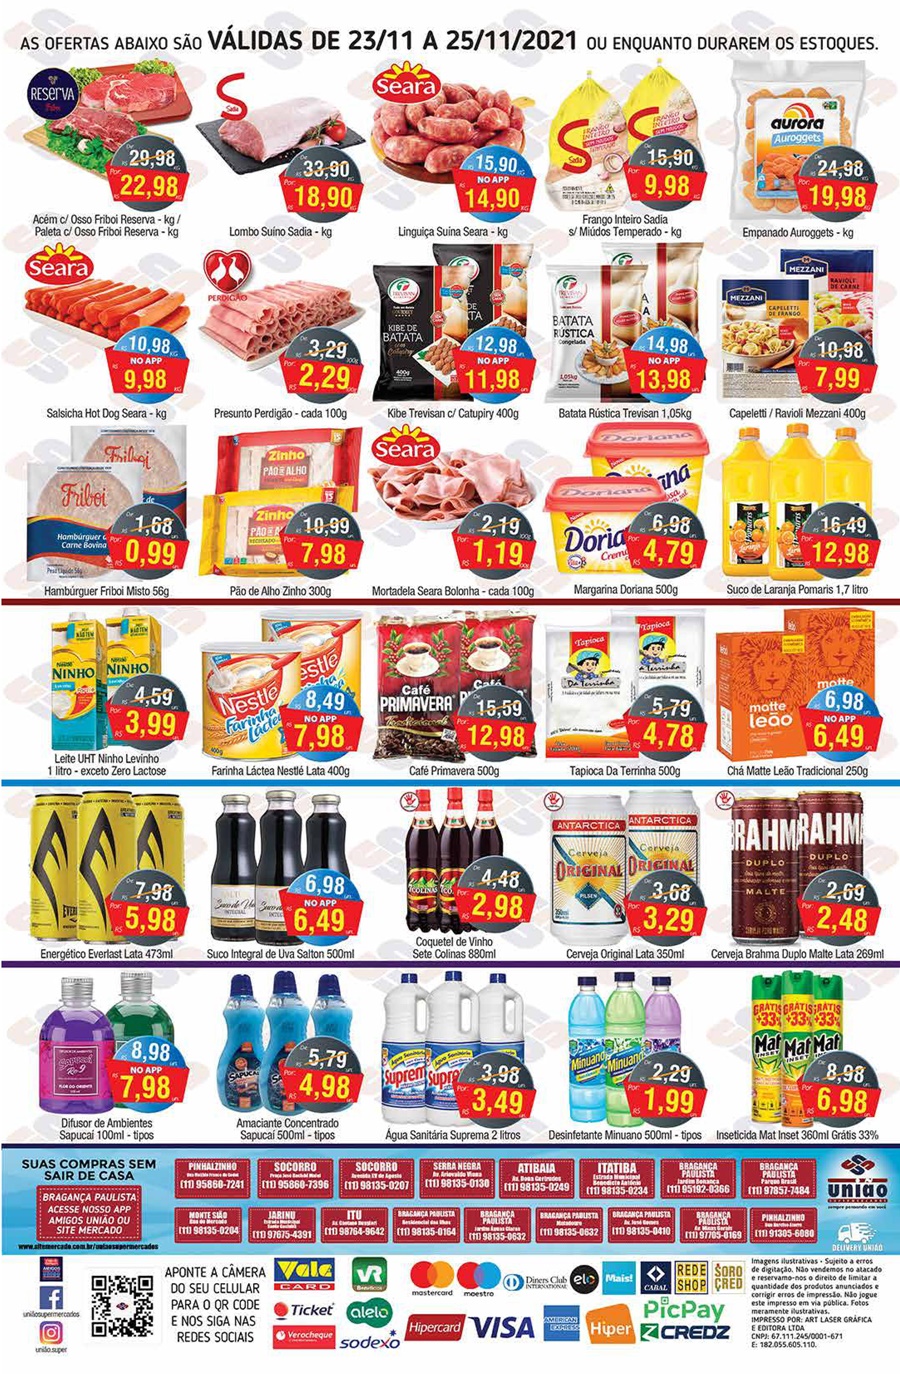 União Supermercados tem ofertas de hortifrúti, açougue, bebidas e muito mais, para a quarta-feira